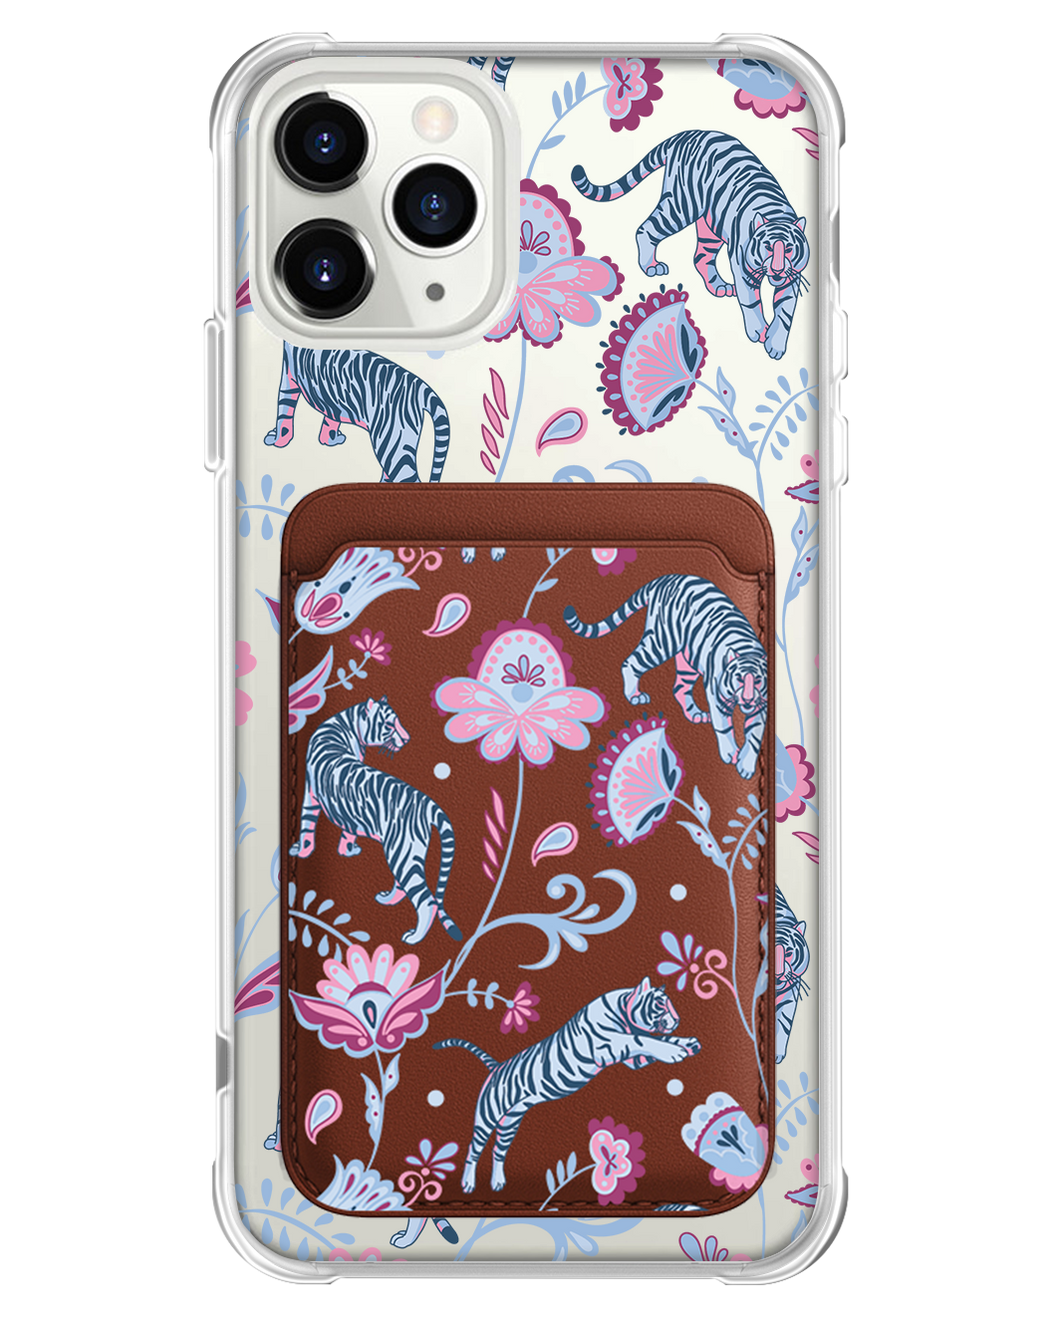 iPhone Magnetic Wallet Case - Tiger & Floral 3.0